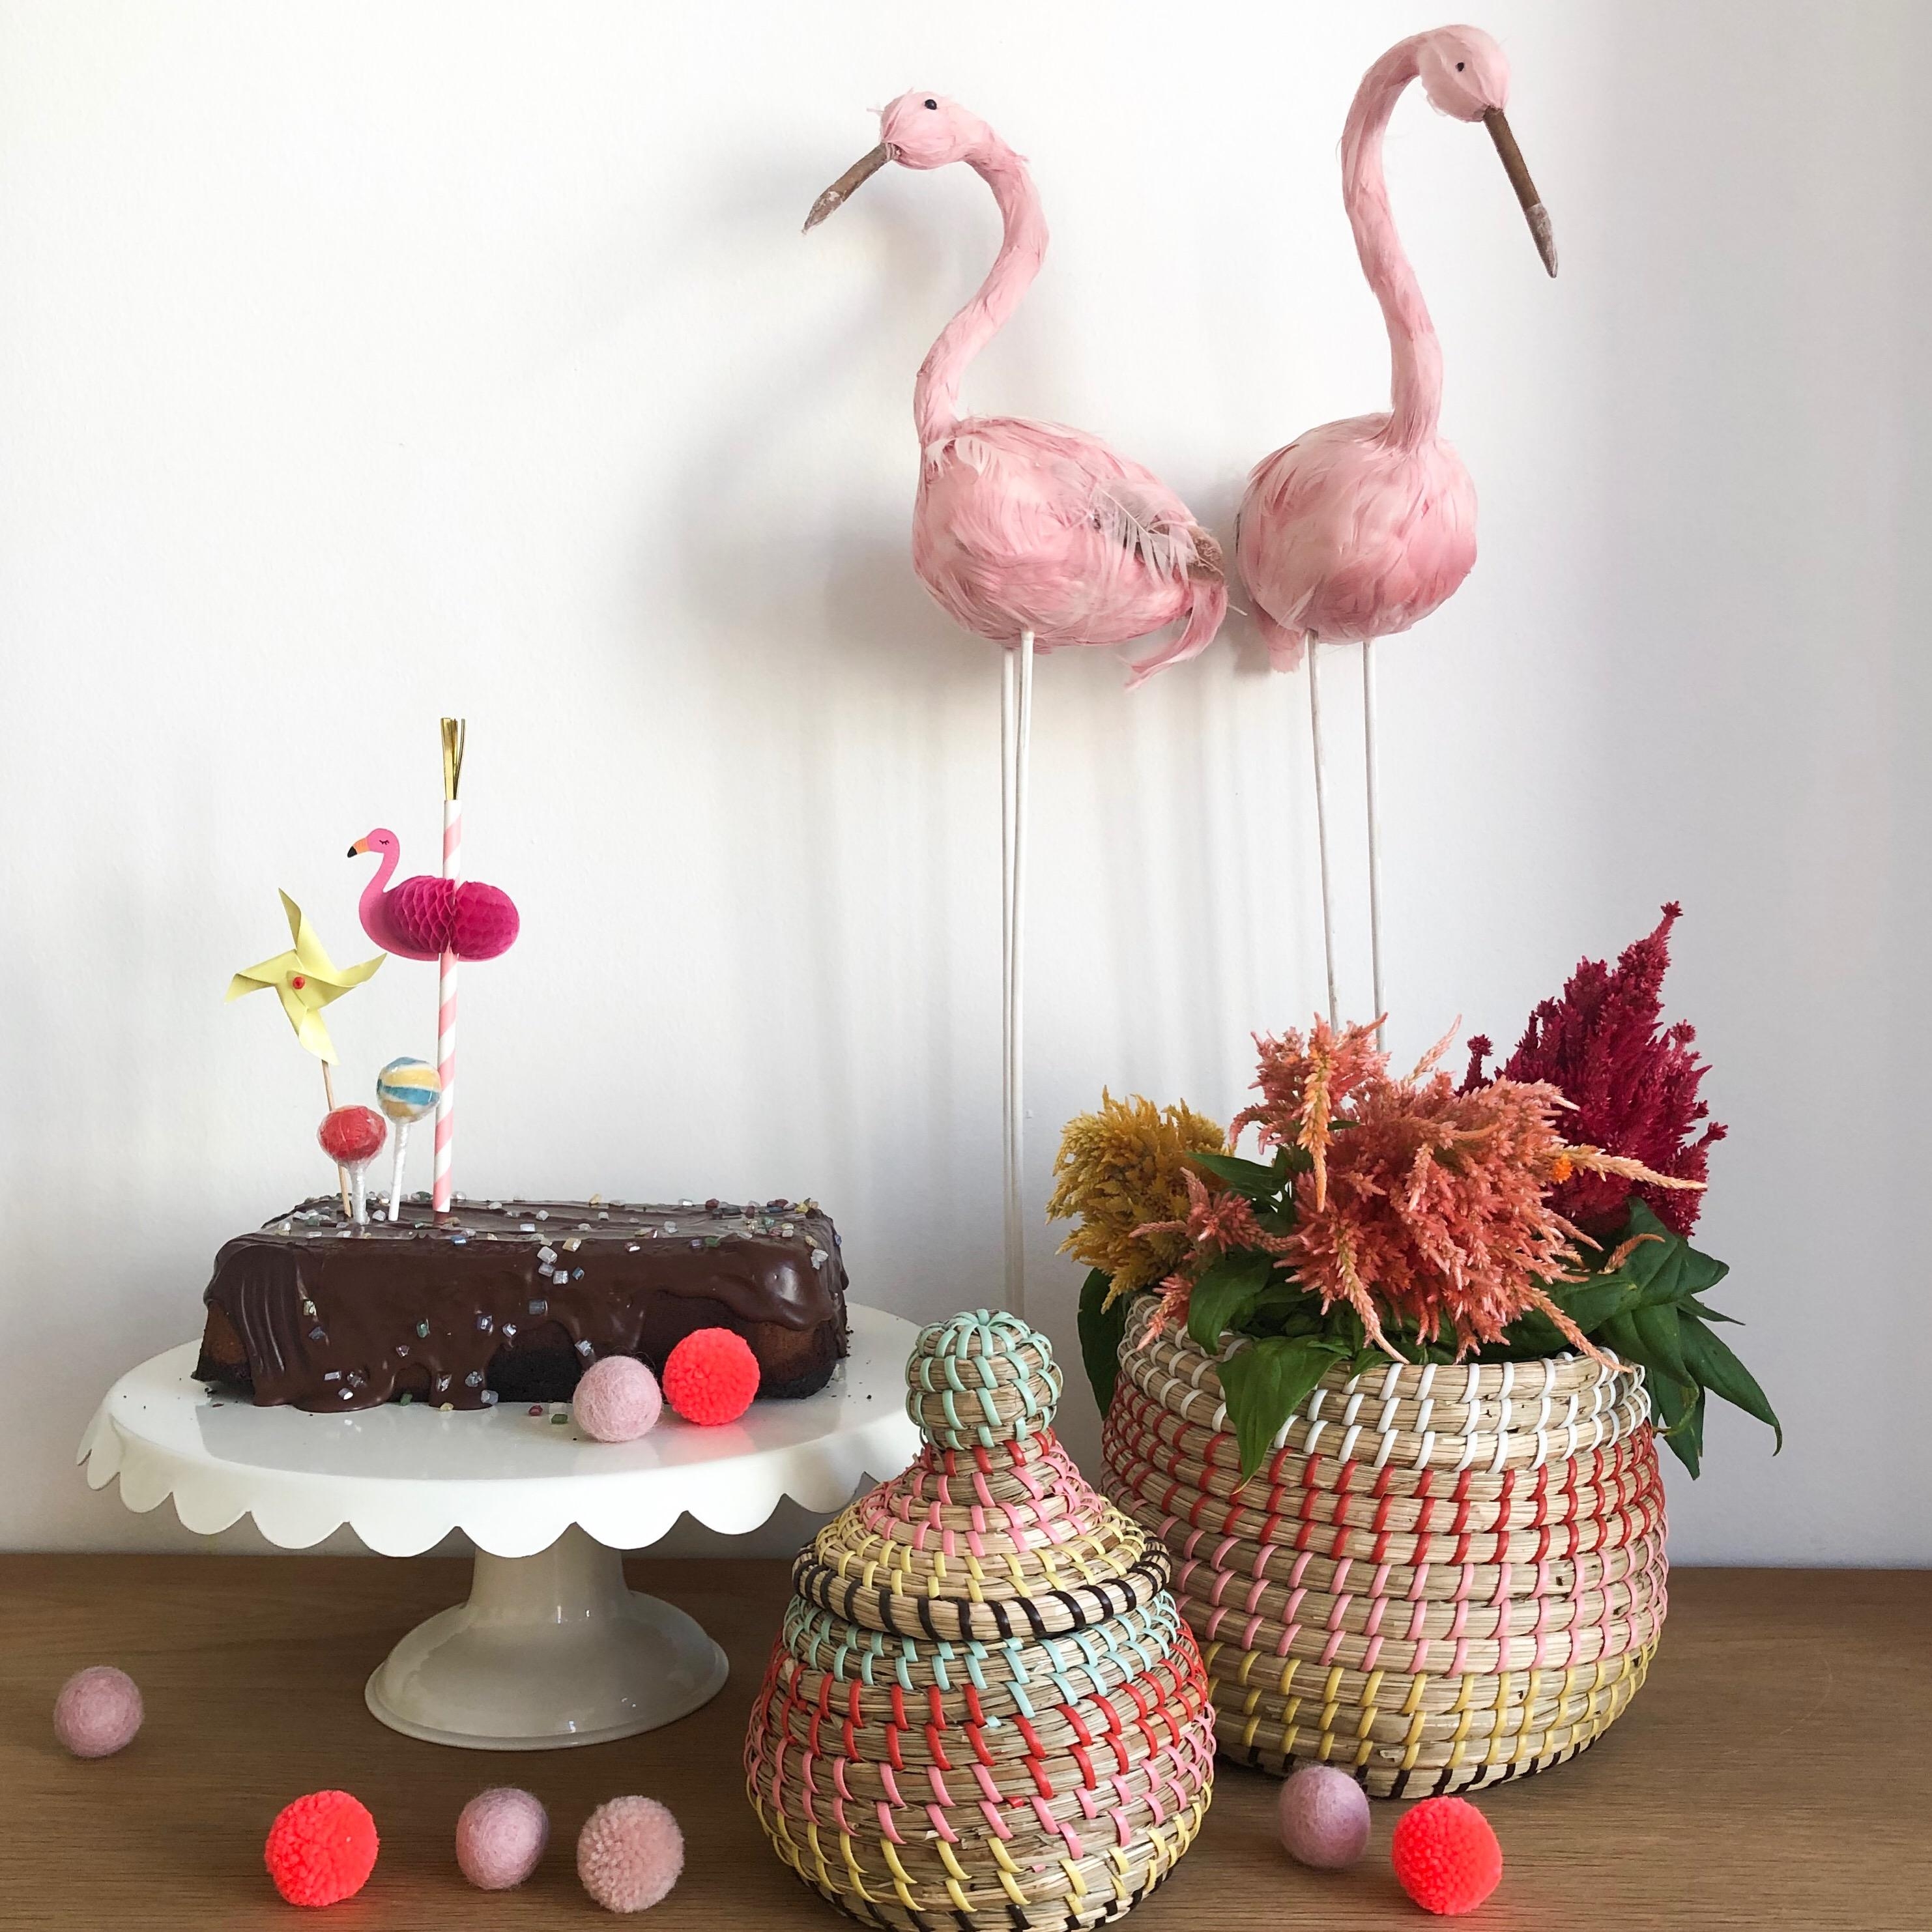 Heute gibt es eine Schokobombe bei uns #marmorkuche #liebe geht durch den Magen #Schoko #flamingos #deko #pink #körbe